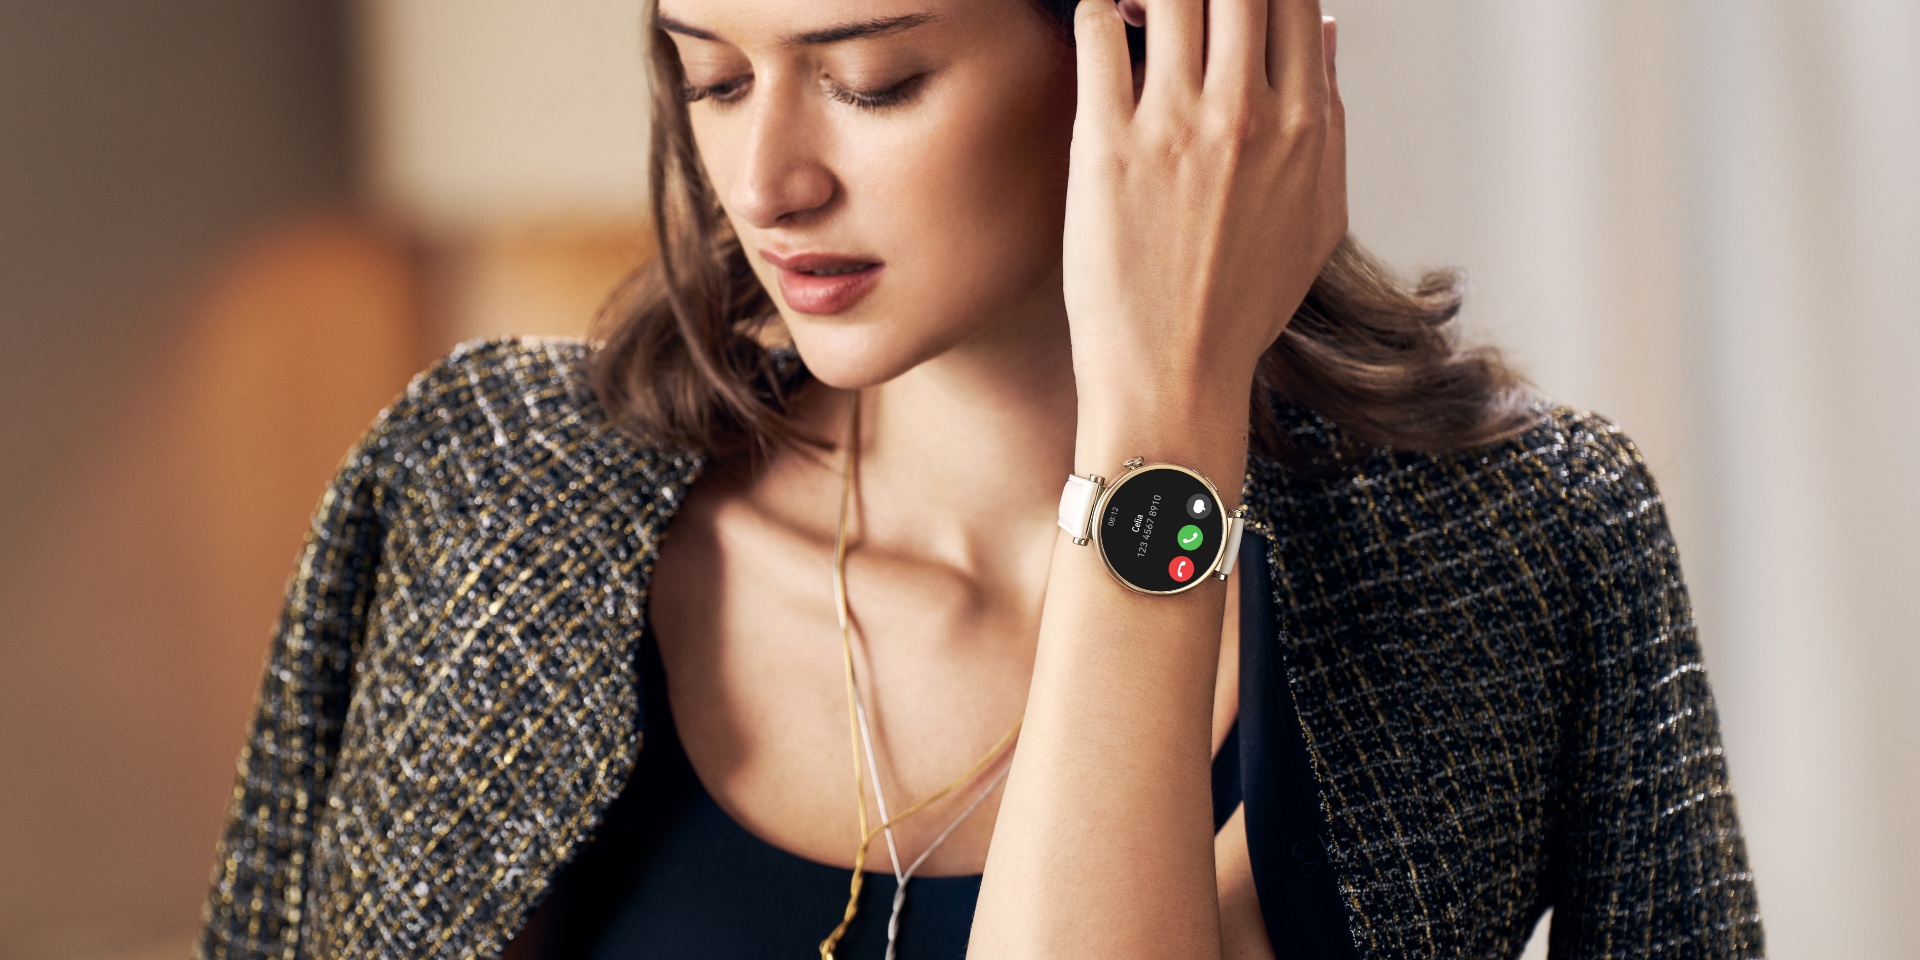 Huawei-reloj inteligente GT4 Pro para hombre, accesorio de pulsera